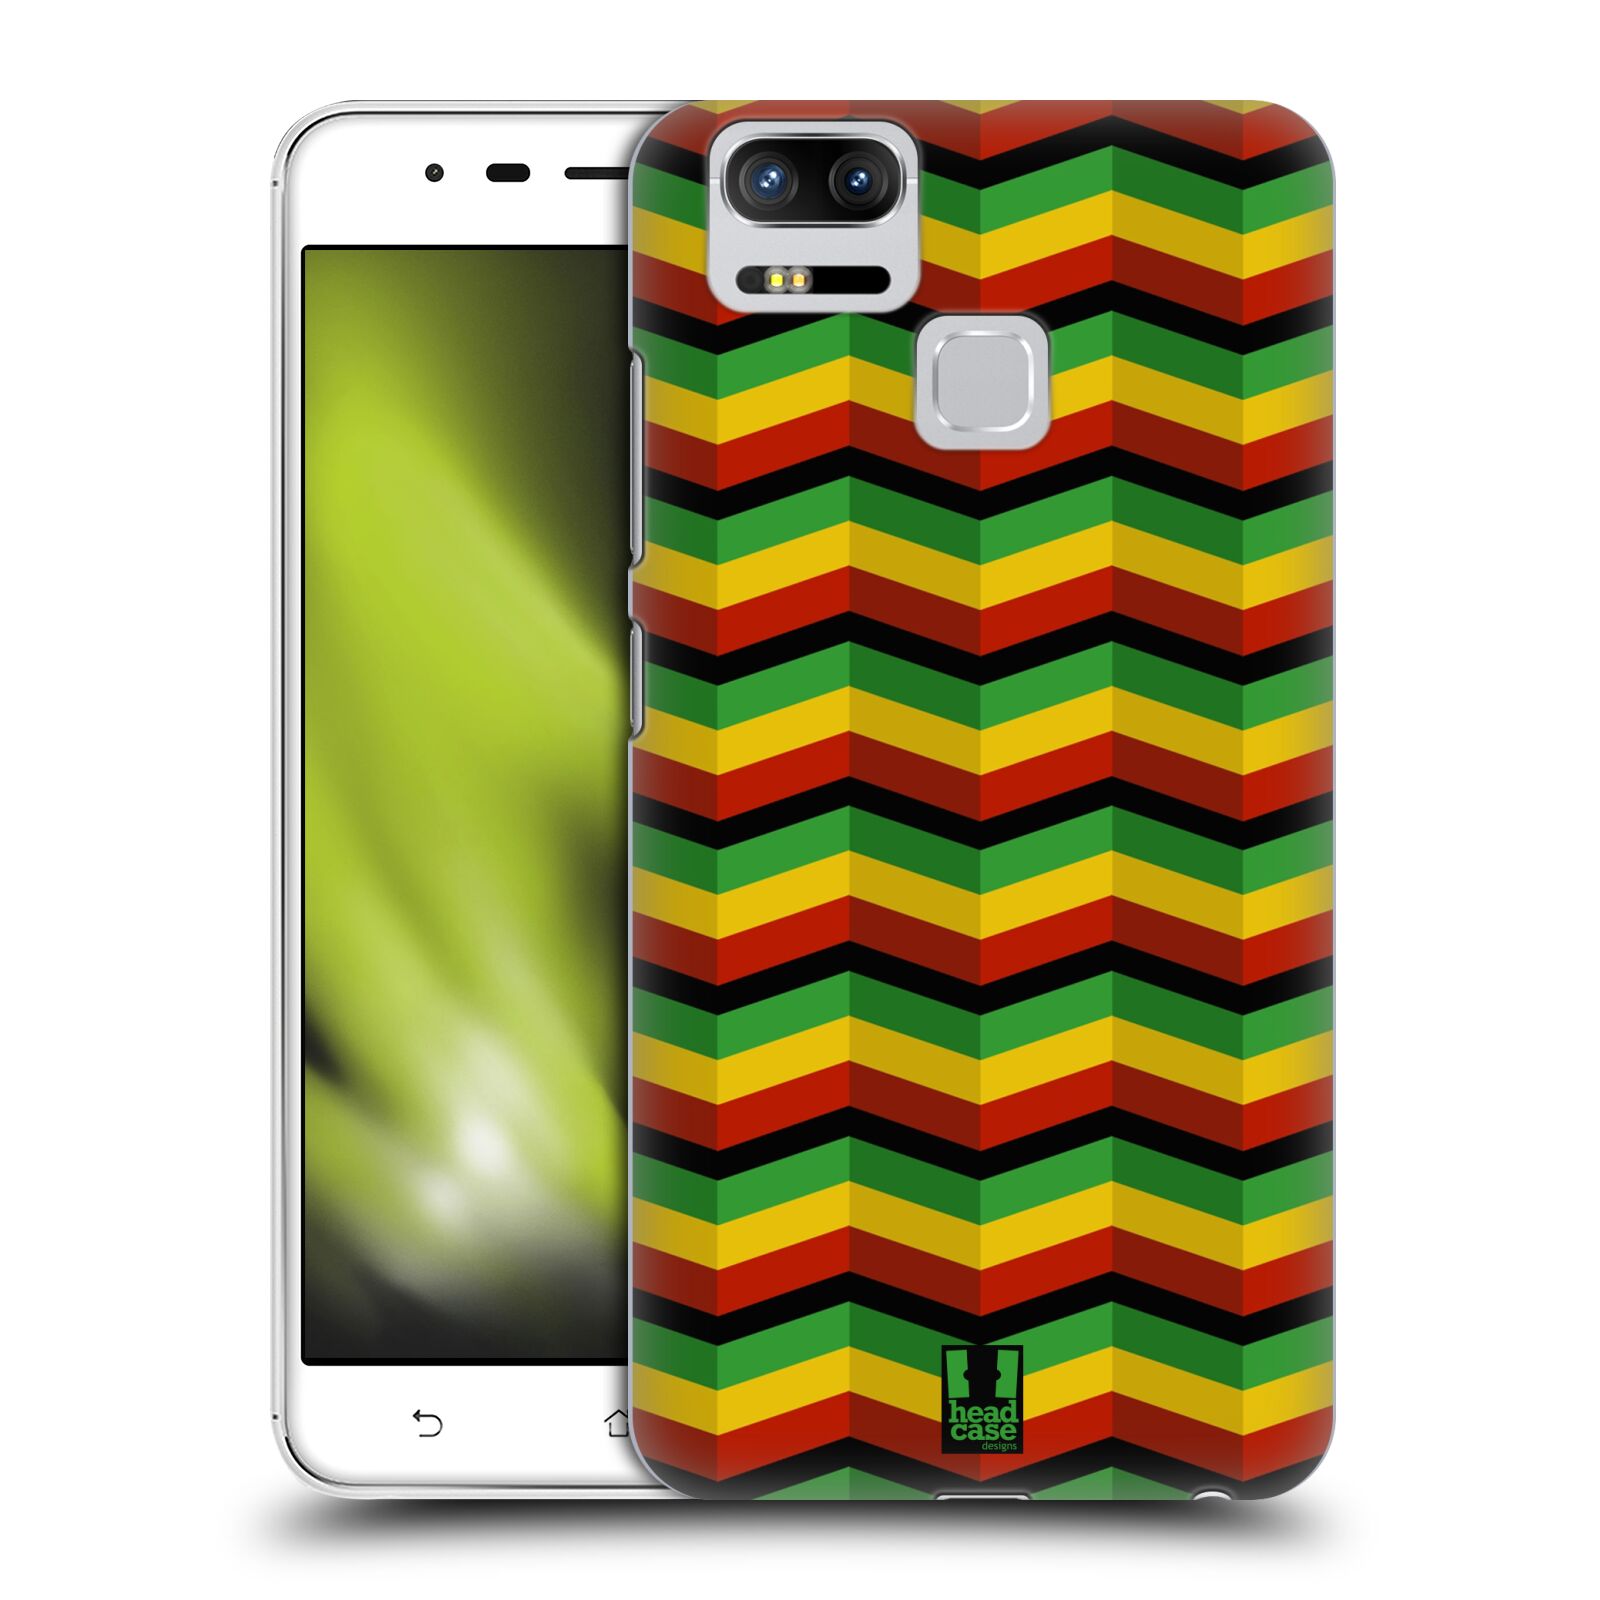 HEAD CASE plastový obal na mobil Asus Zenfone 3 Zoom ZE553KL vzor Rasta barevné vzory CHEVRON